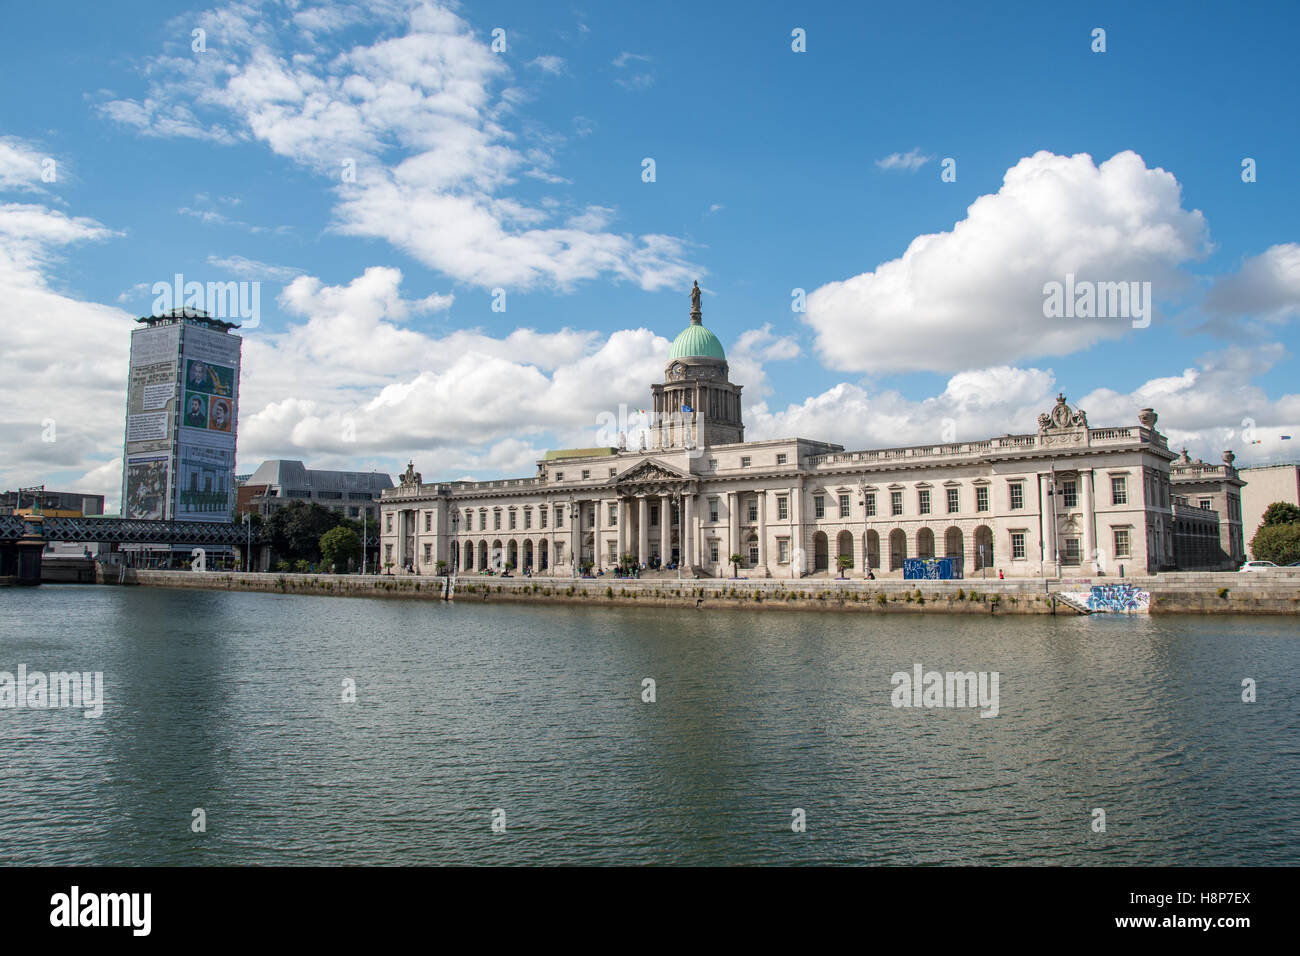 Dublín, Irlanda - El Custom House, neoclásico del siglo xviii en Dublín, Irlanda, el edificio que alberga el Departamento de Vivienda. Foto de stock